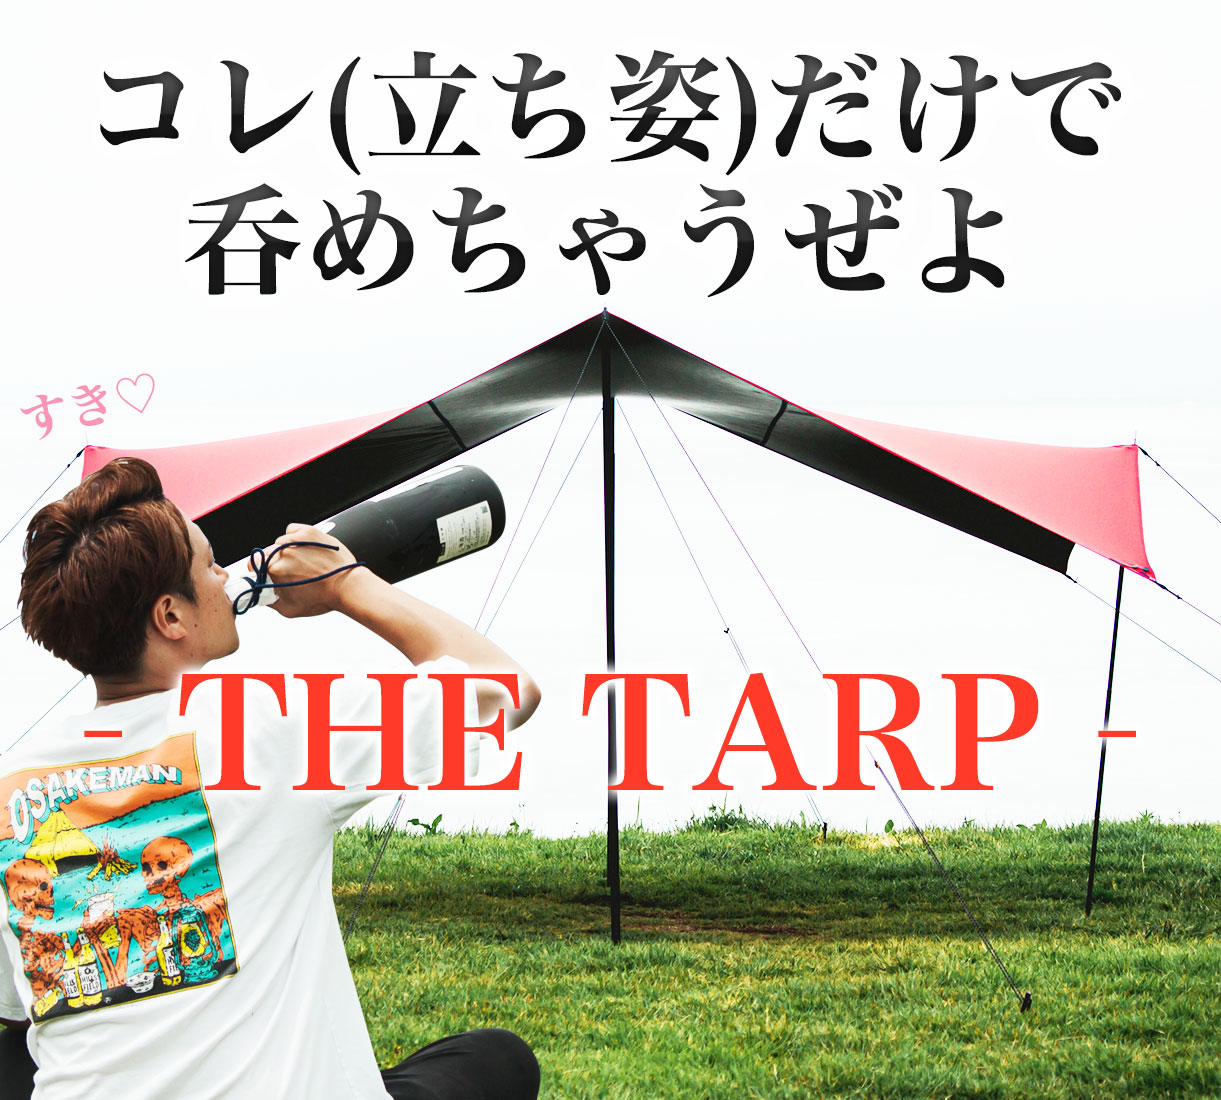 【限定製作】アウトドアハイスペックタープ THE TARP -ザ・タープ- レッド | HILLS FIELD